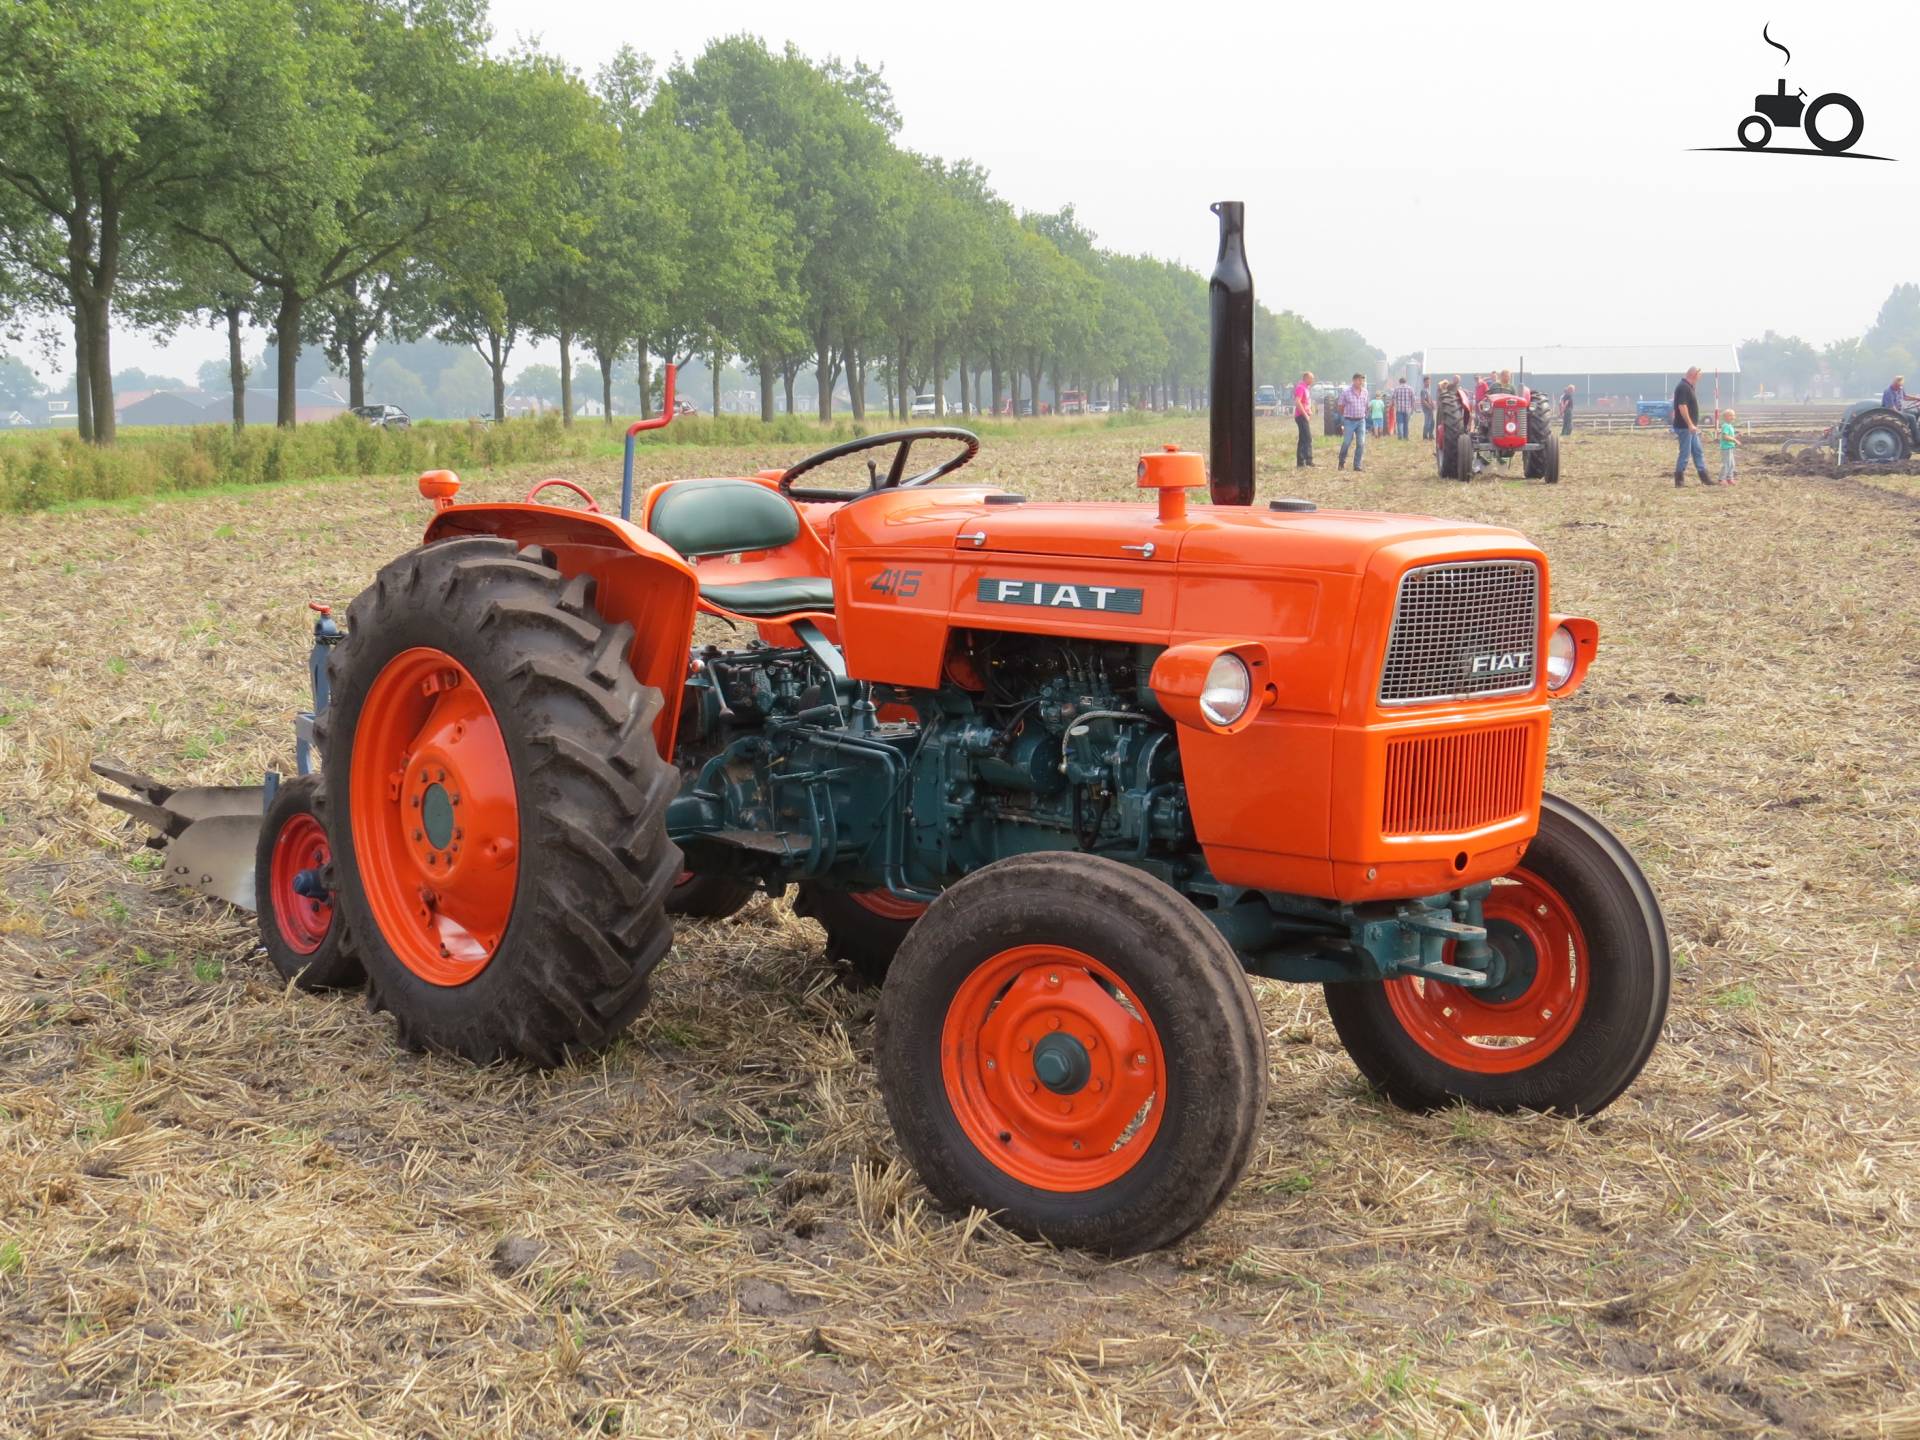 fiat-415-france-tracteur-image-870146